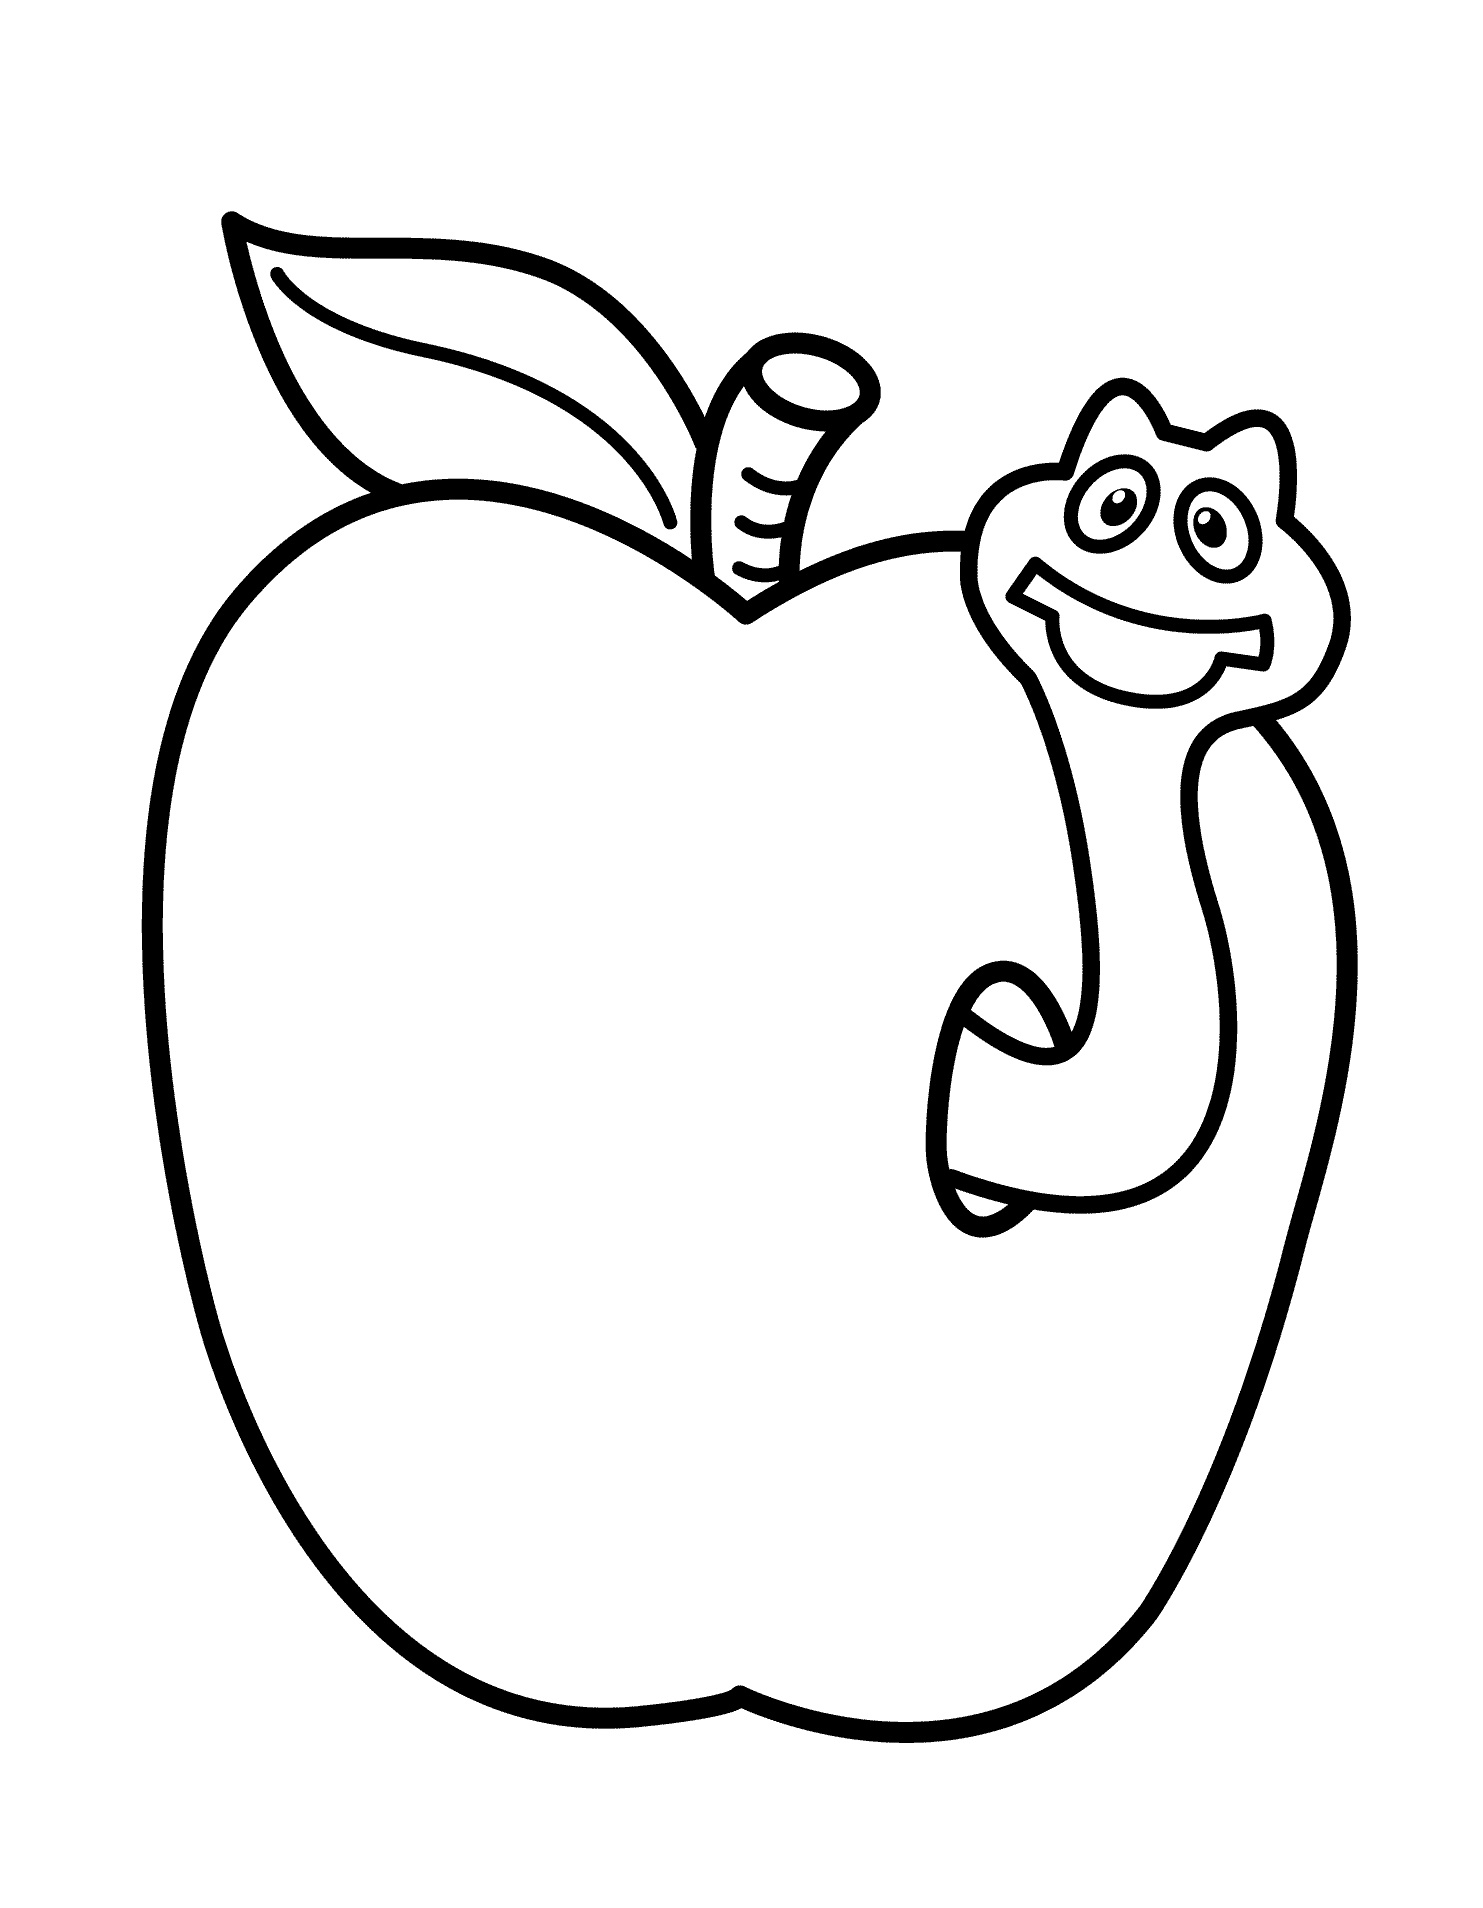 Яблоко с червяком раскраска для детей